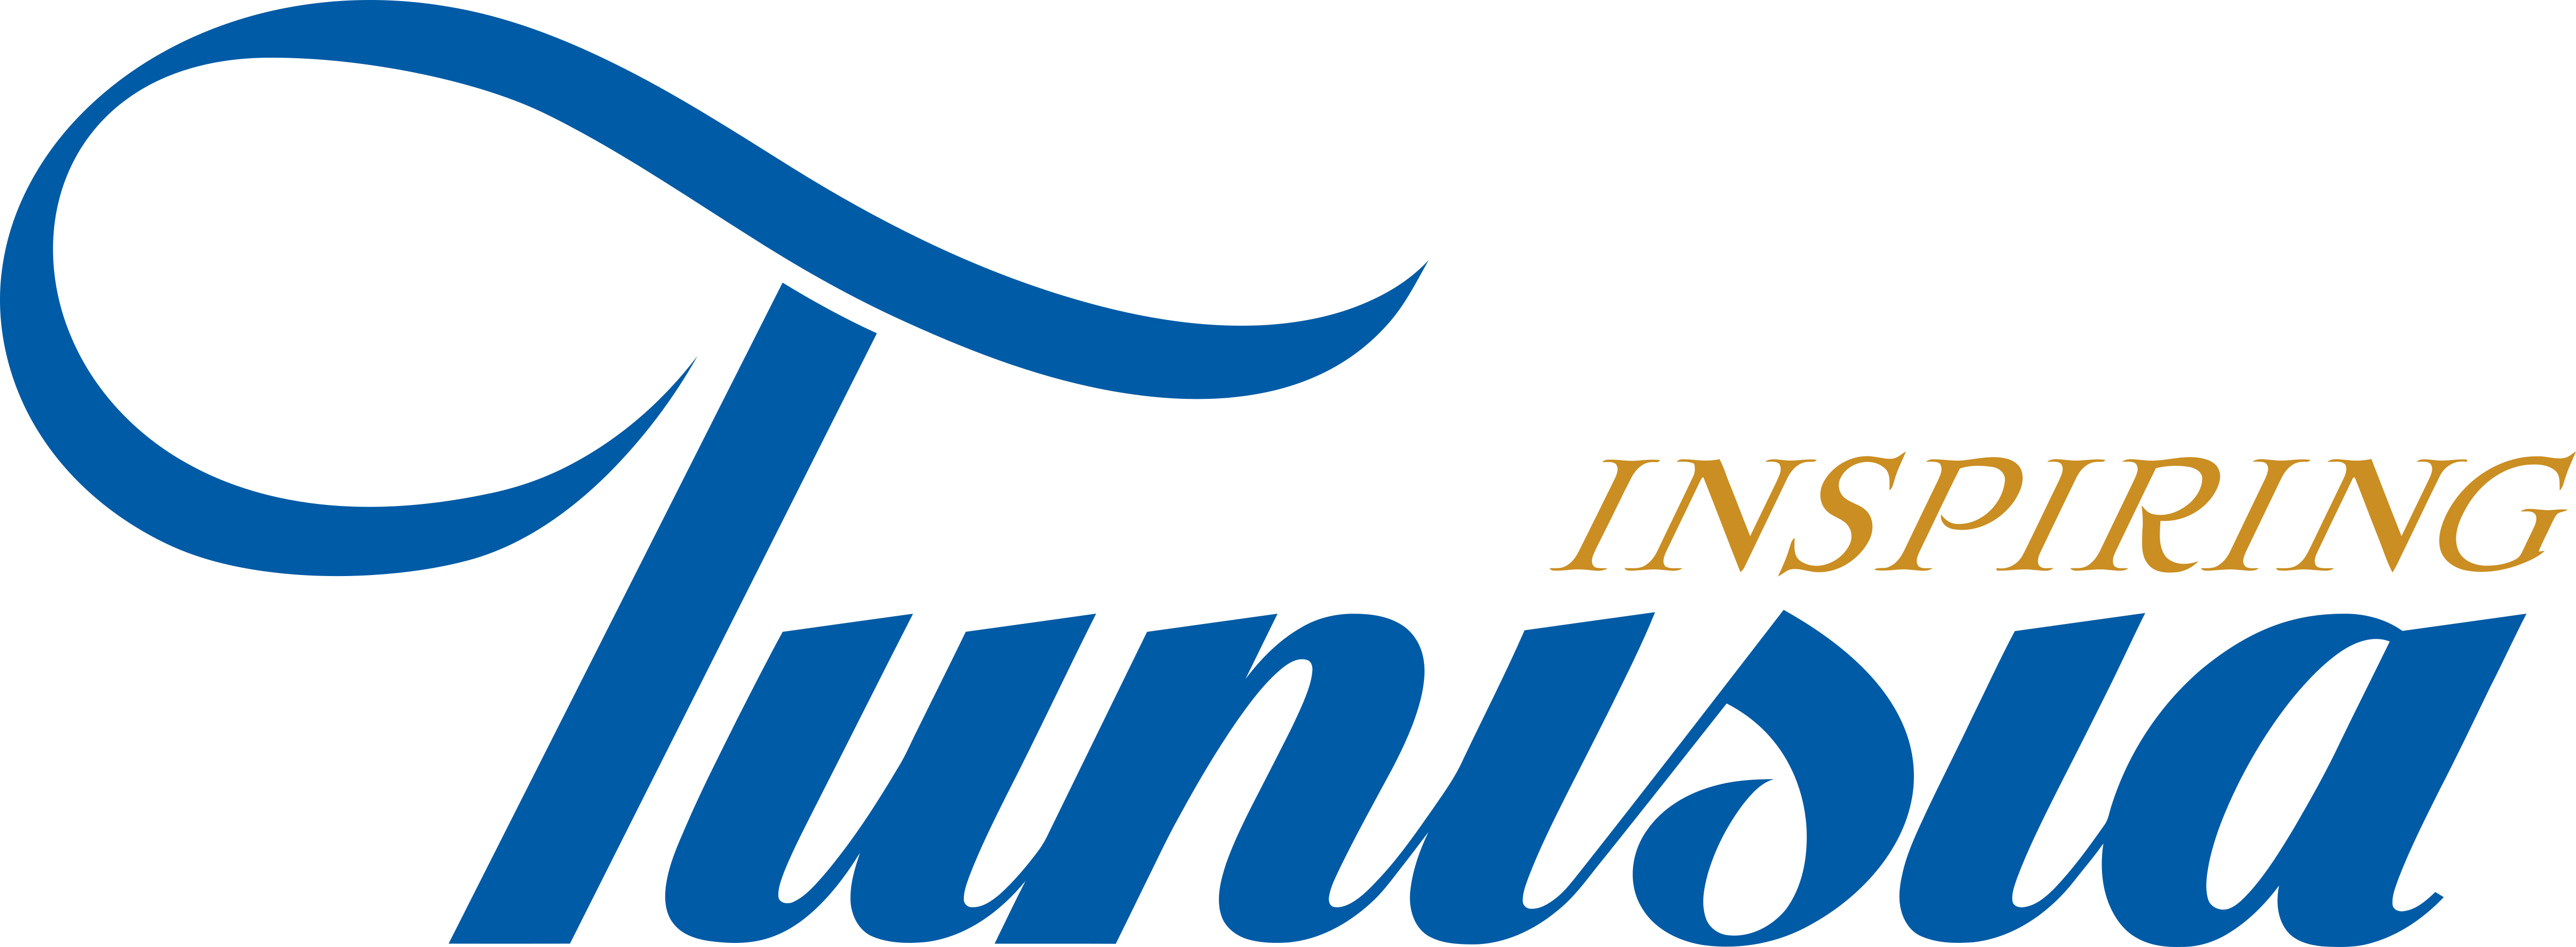 tunisia tourism slogan